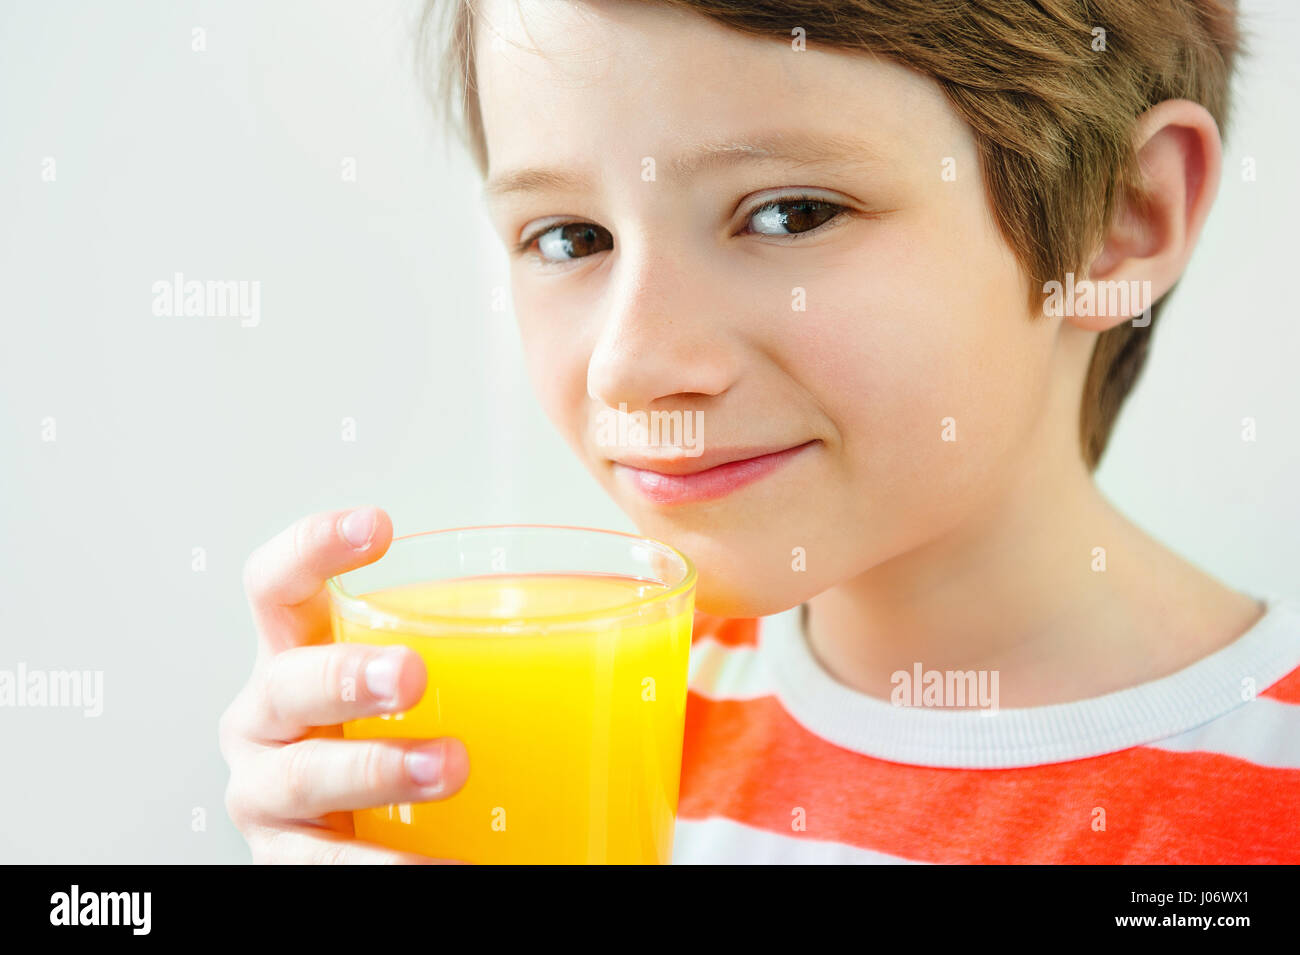 Chico sonriente disfrutando con un vaso de jugo amarillo Foto de stock